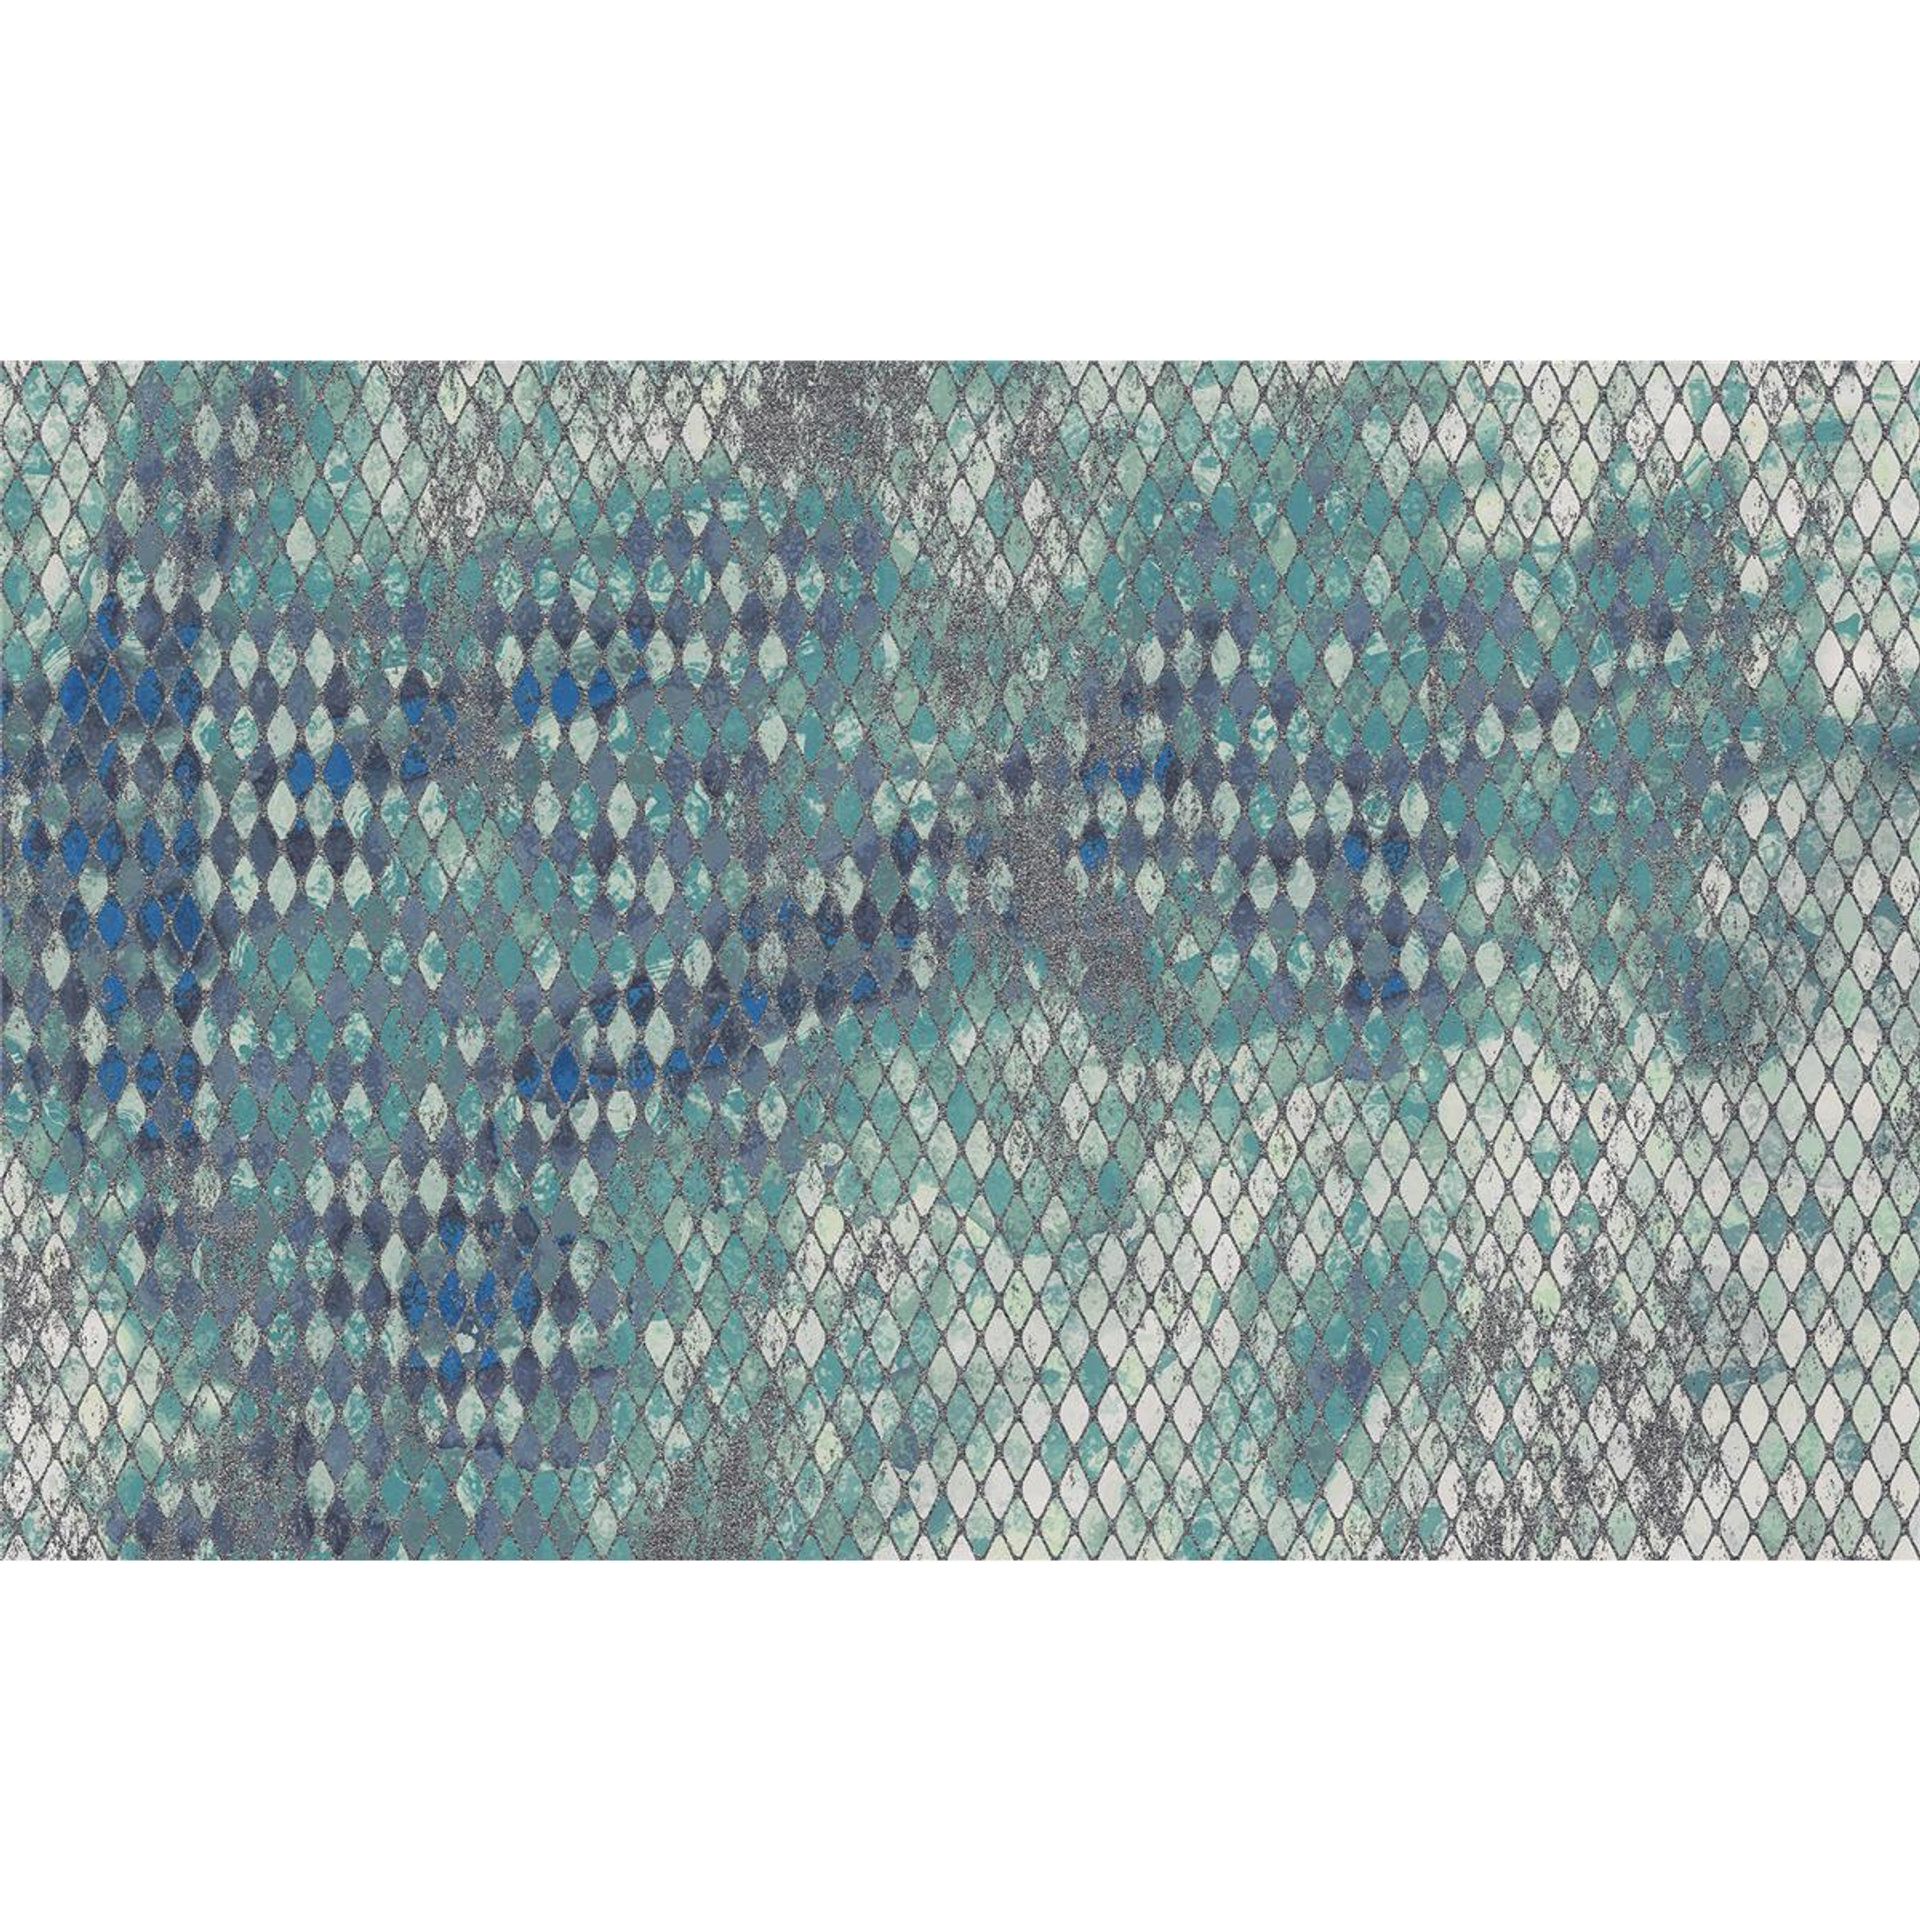 Vlies Fototapete - Harlekin - Größe 400 x 250 cm